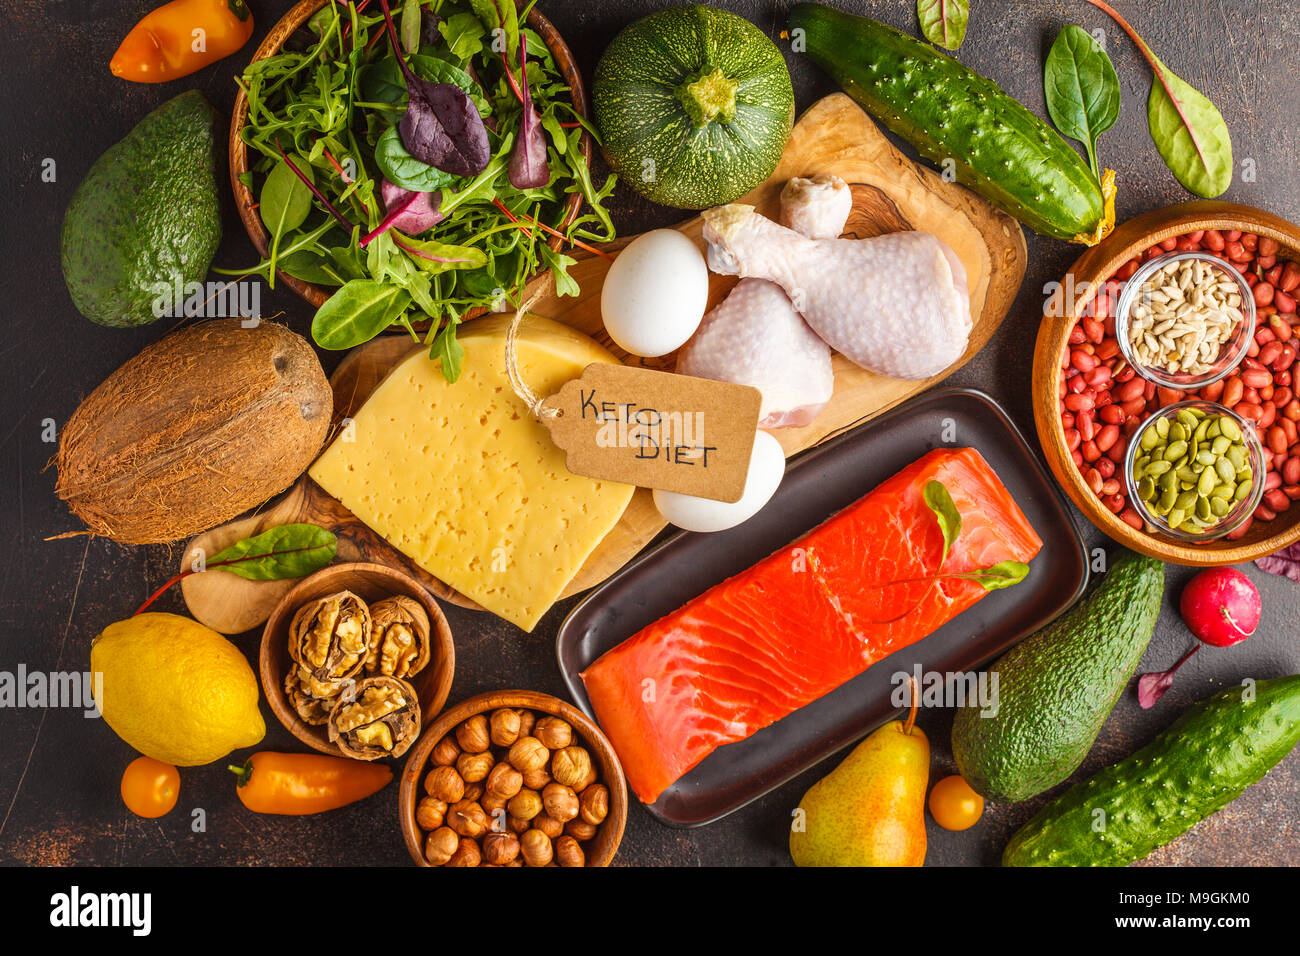 Keto Diät Konzept. Low-carb essen Hintergrund. Gemüse, Fisch, Fleisch,  Käse, Nüsse auf einem dunklen Hintergrund Stockfotografie - Alamy